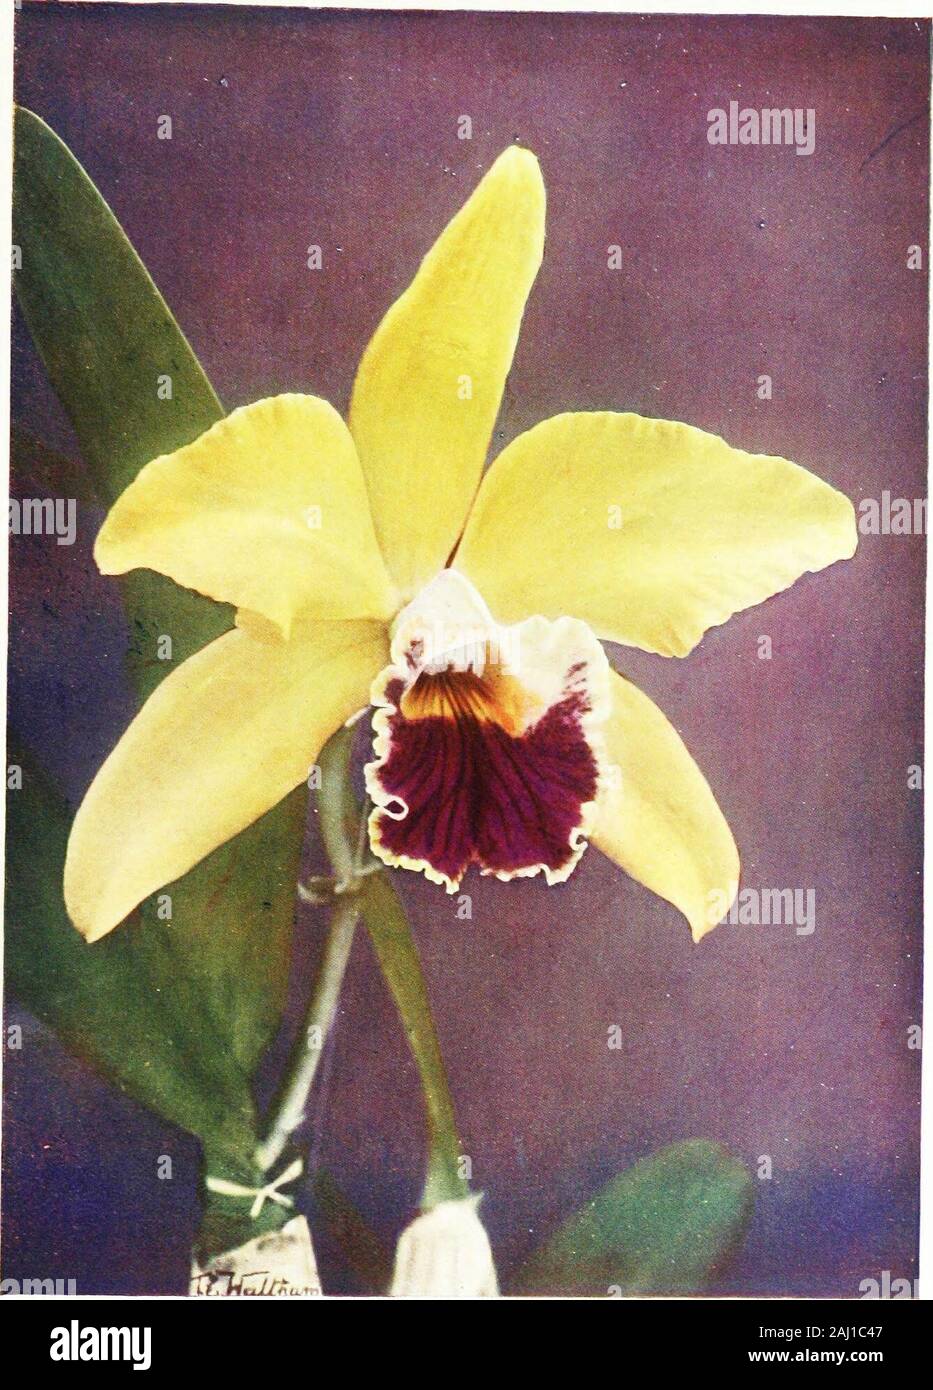 Orchids for everyone . anthina), L.-c. Astoria (C GaskelUana xZ. xanthina also known as Z.-f. ZTow. Afr/ Astor and Z.-c.Yellow Prince; L.-c. Baden Powellii (C. Lawrenceana y.Z. tenebrosd)., L.-c. Ballii (C. Schrcedera x Z. cinnabarind).,L.-c. BELLA (C labiata x Z. purpurata), L.-c. Boylei (C TrianaX Z. anceps L.-c. Bryan (C. GaskelUana x Z. crispa L.-c.Cappei (C Warscewiczii x Z. cinnabarina), L.-c. Choletiana(C. Mossia X Z. superbiens a very interesting, beautiful, andfree-flowering hybrid, with most likeness to the Lslia parent;L.-c. Clive (C. Dowiana x Z. pumila L.-c. Clonia (C. ^^r-sc Stock Photo